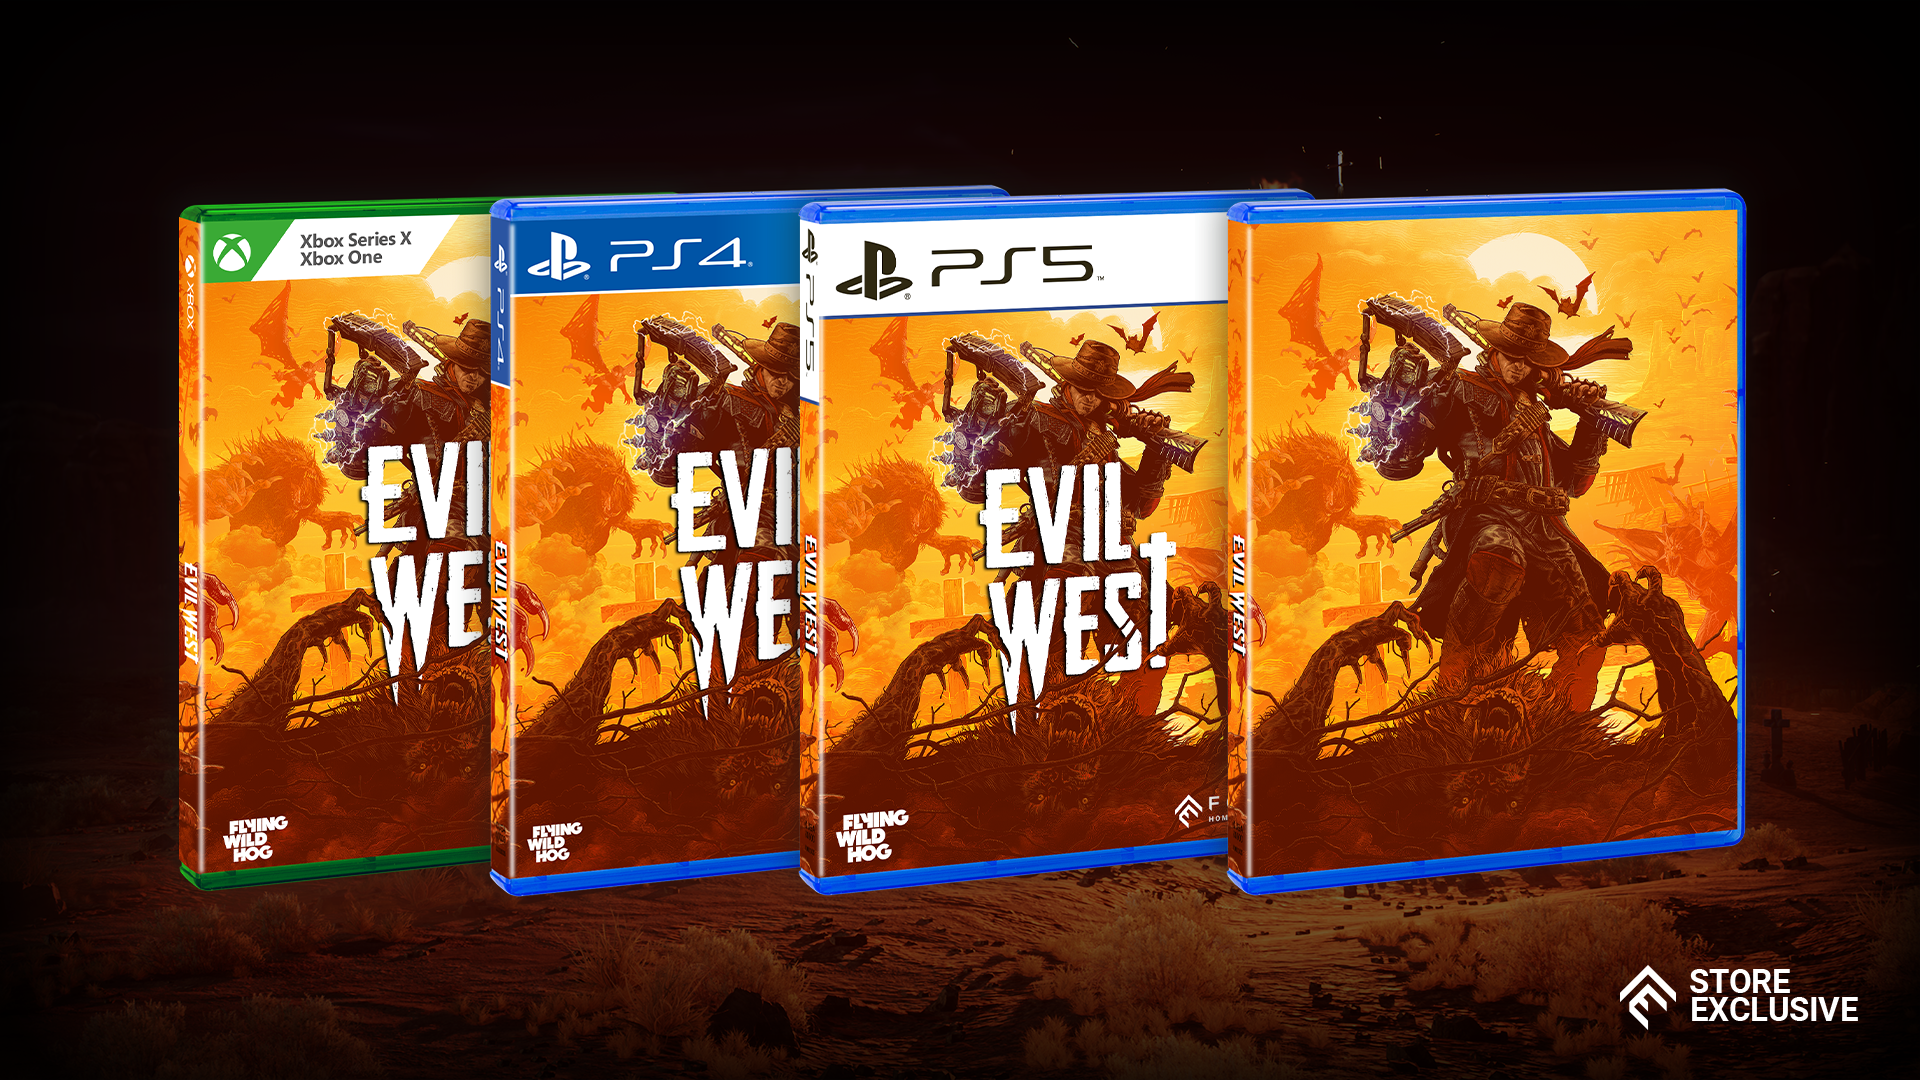 Evil West Xbox Series X, Xbox One - Best Buy